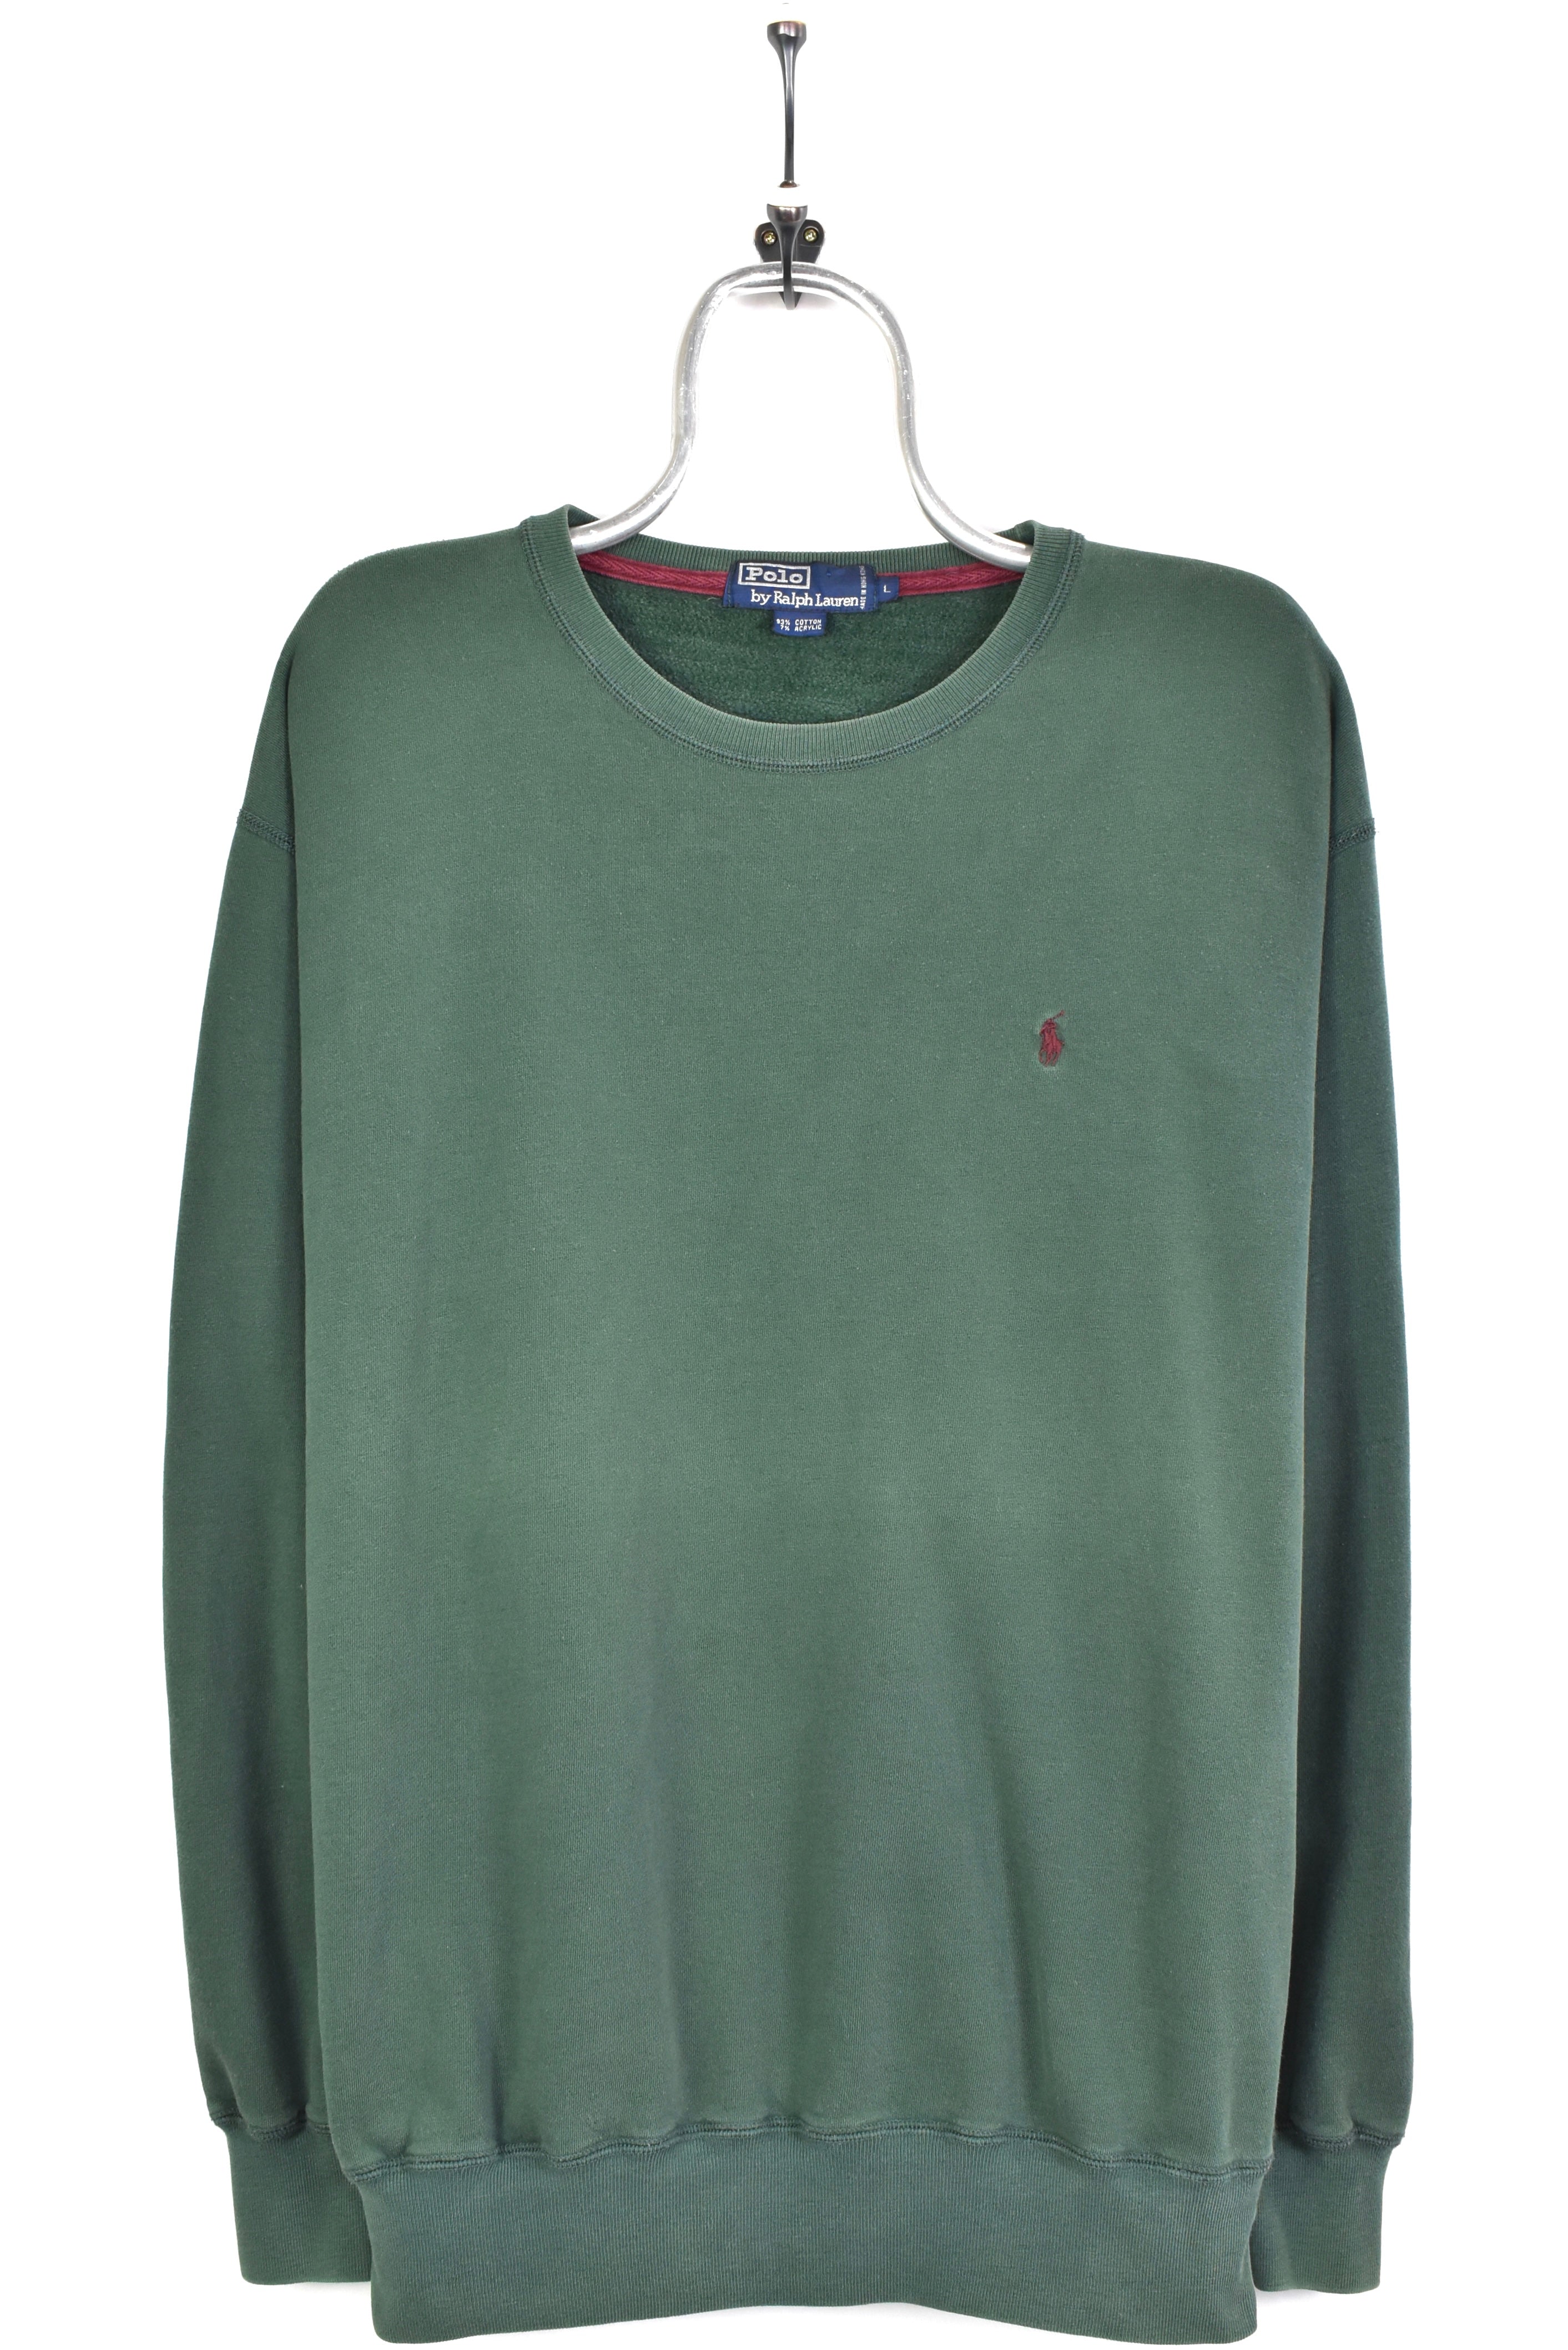 Vintage Ralph Lauren embroidered green sweatshirt | XL RALPH LAUREN